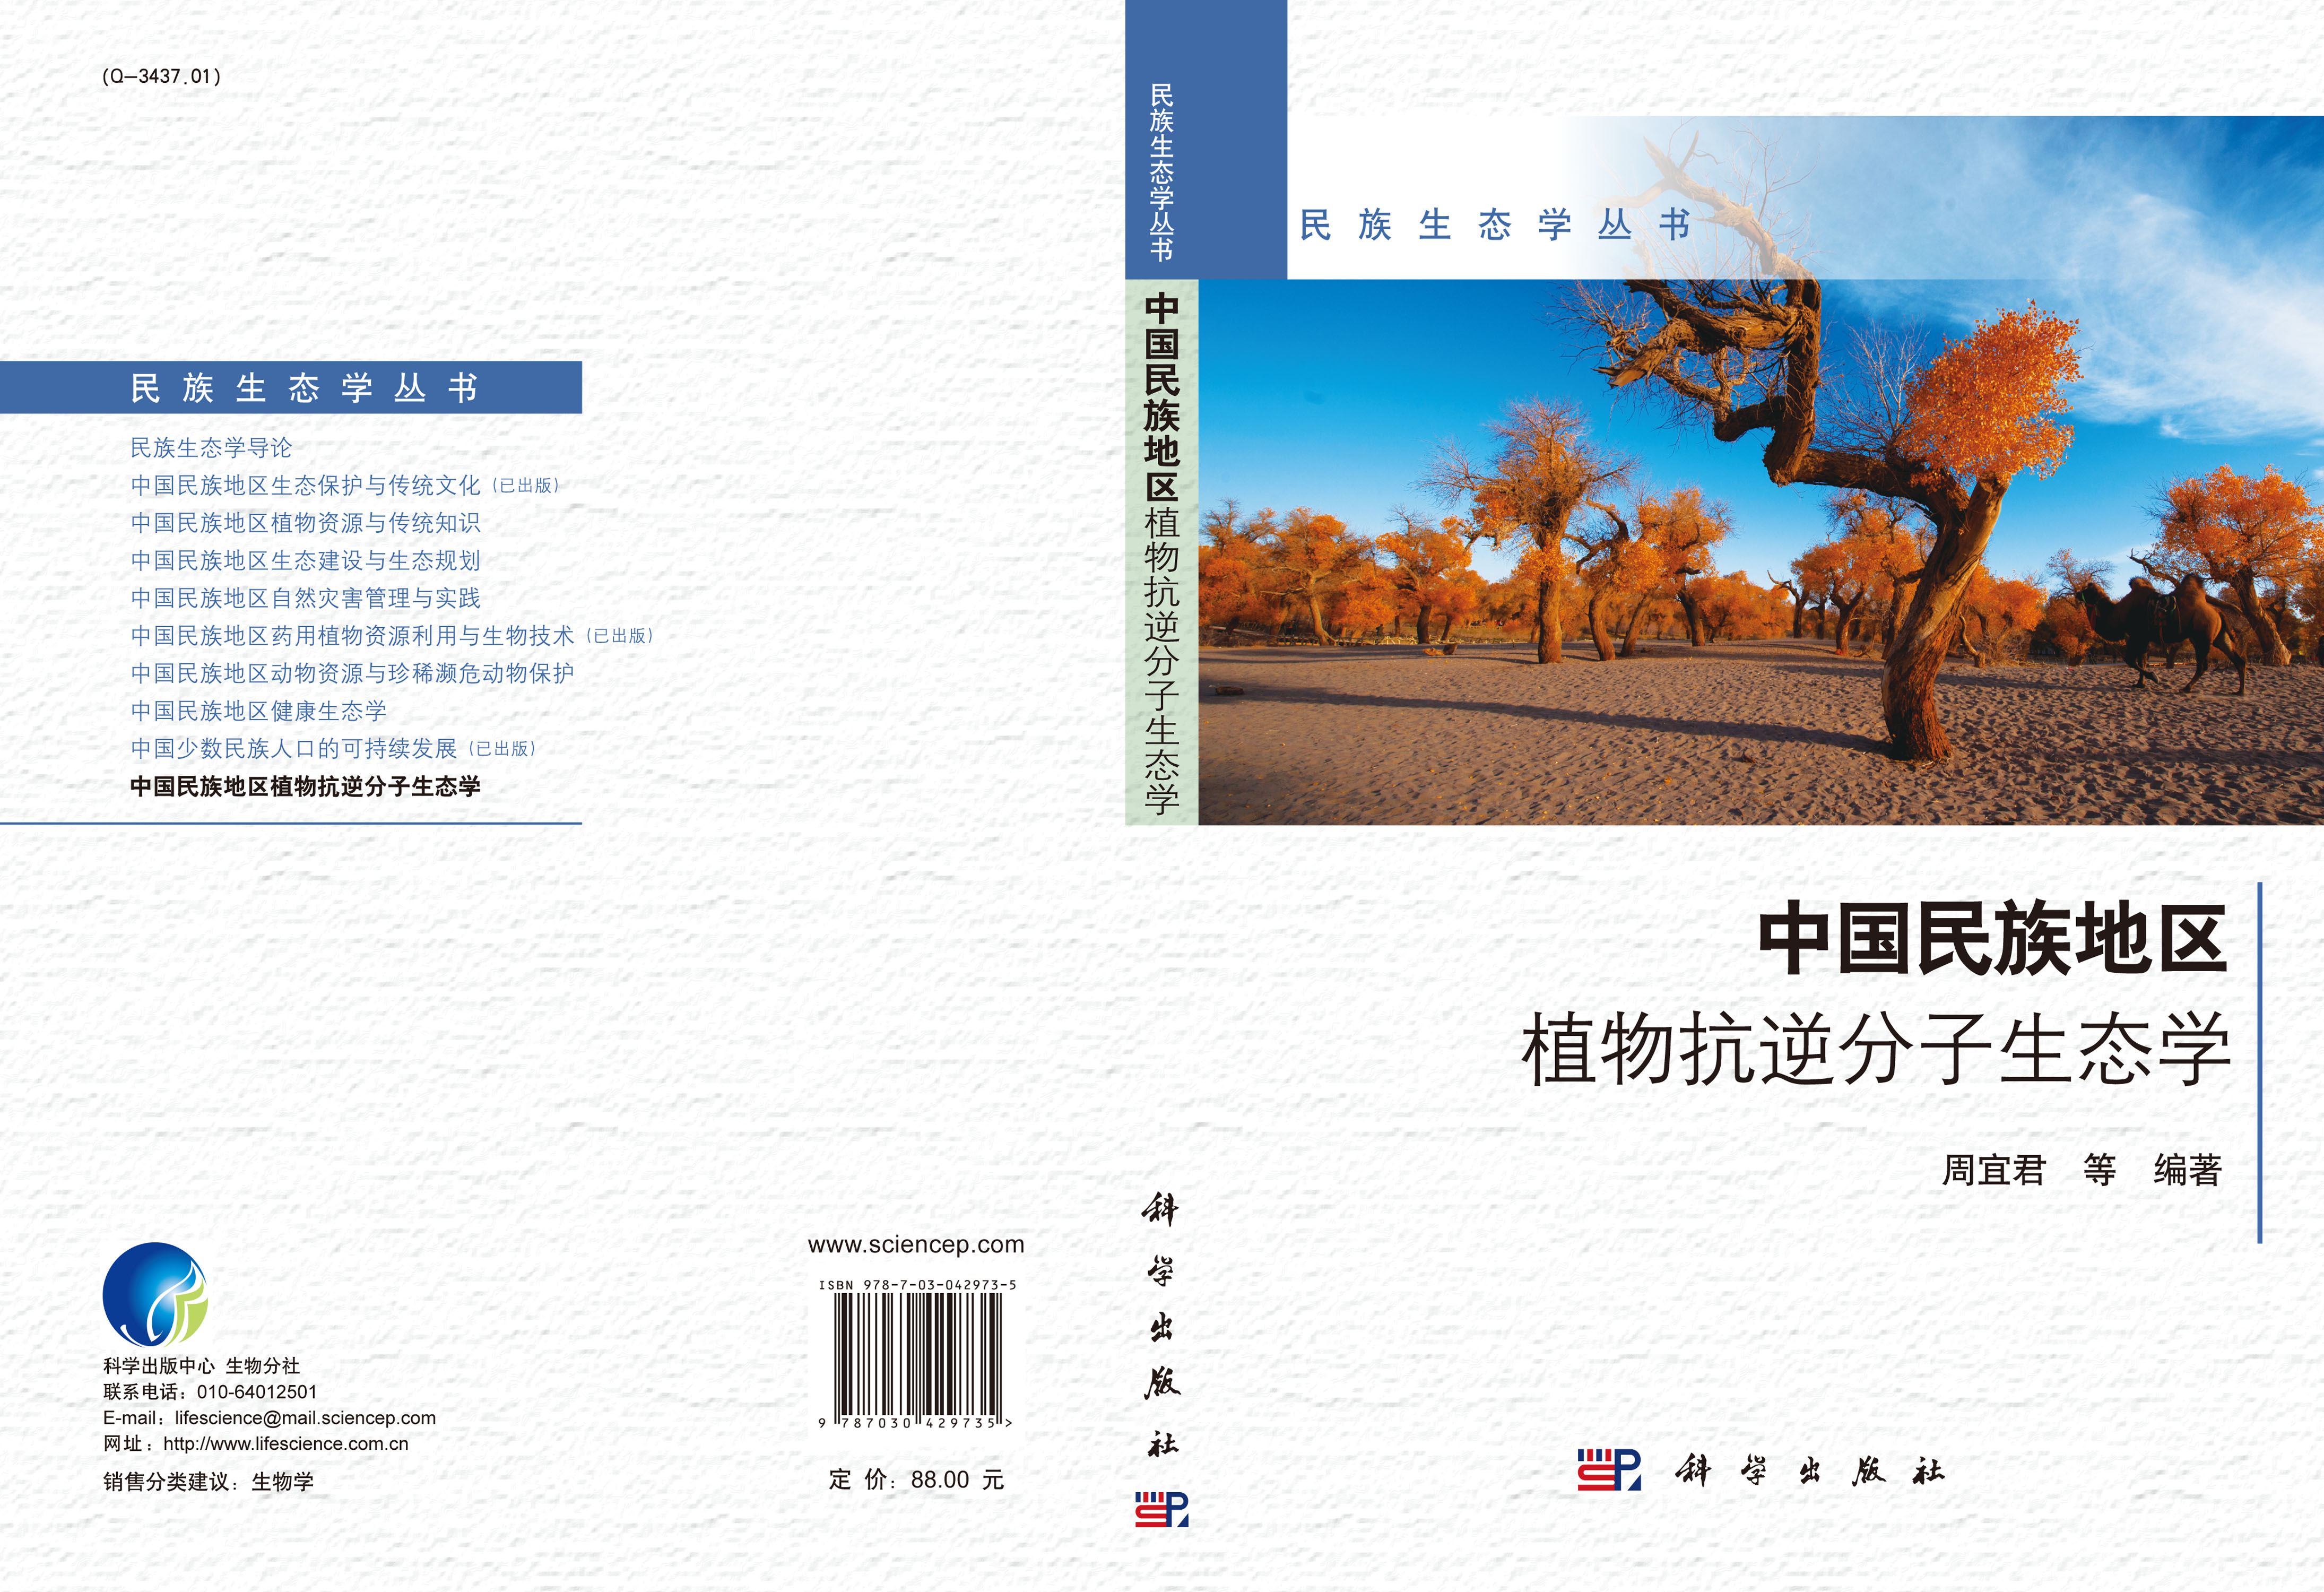 中国民族地区植物抗逆分子生态学